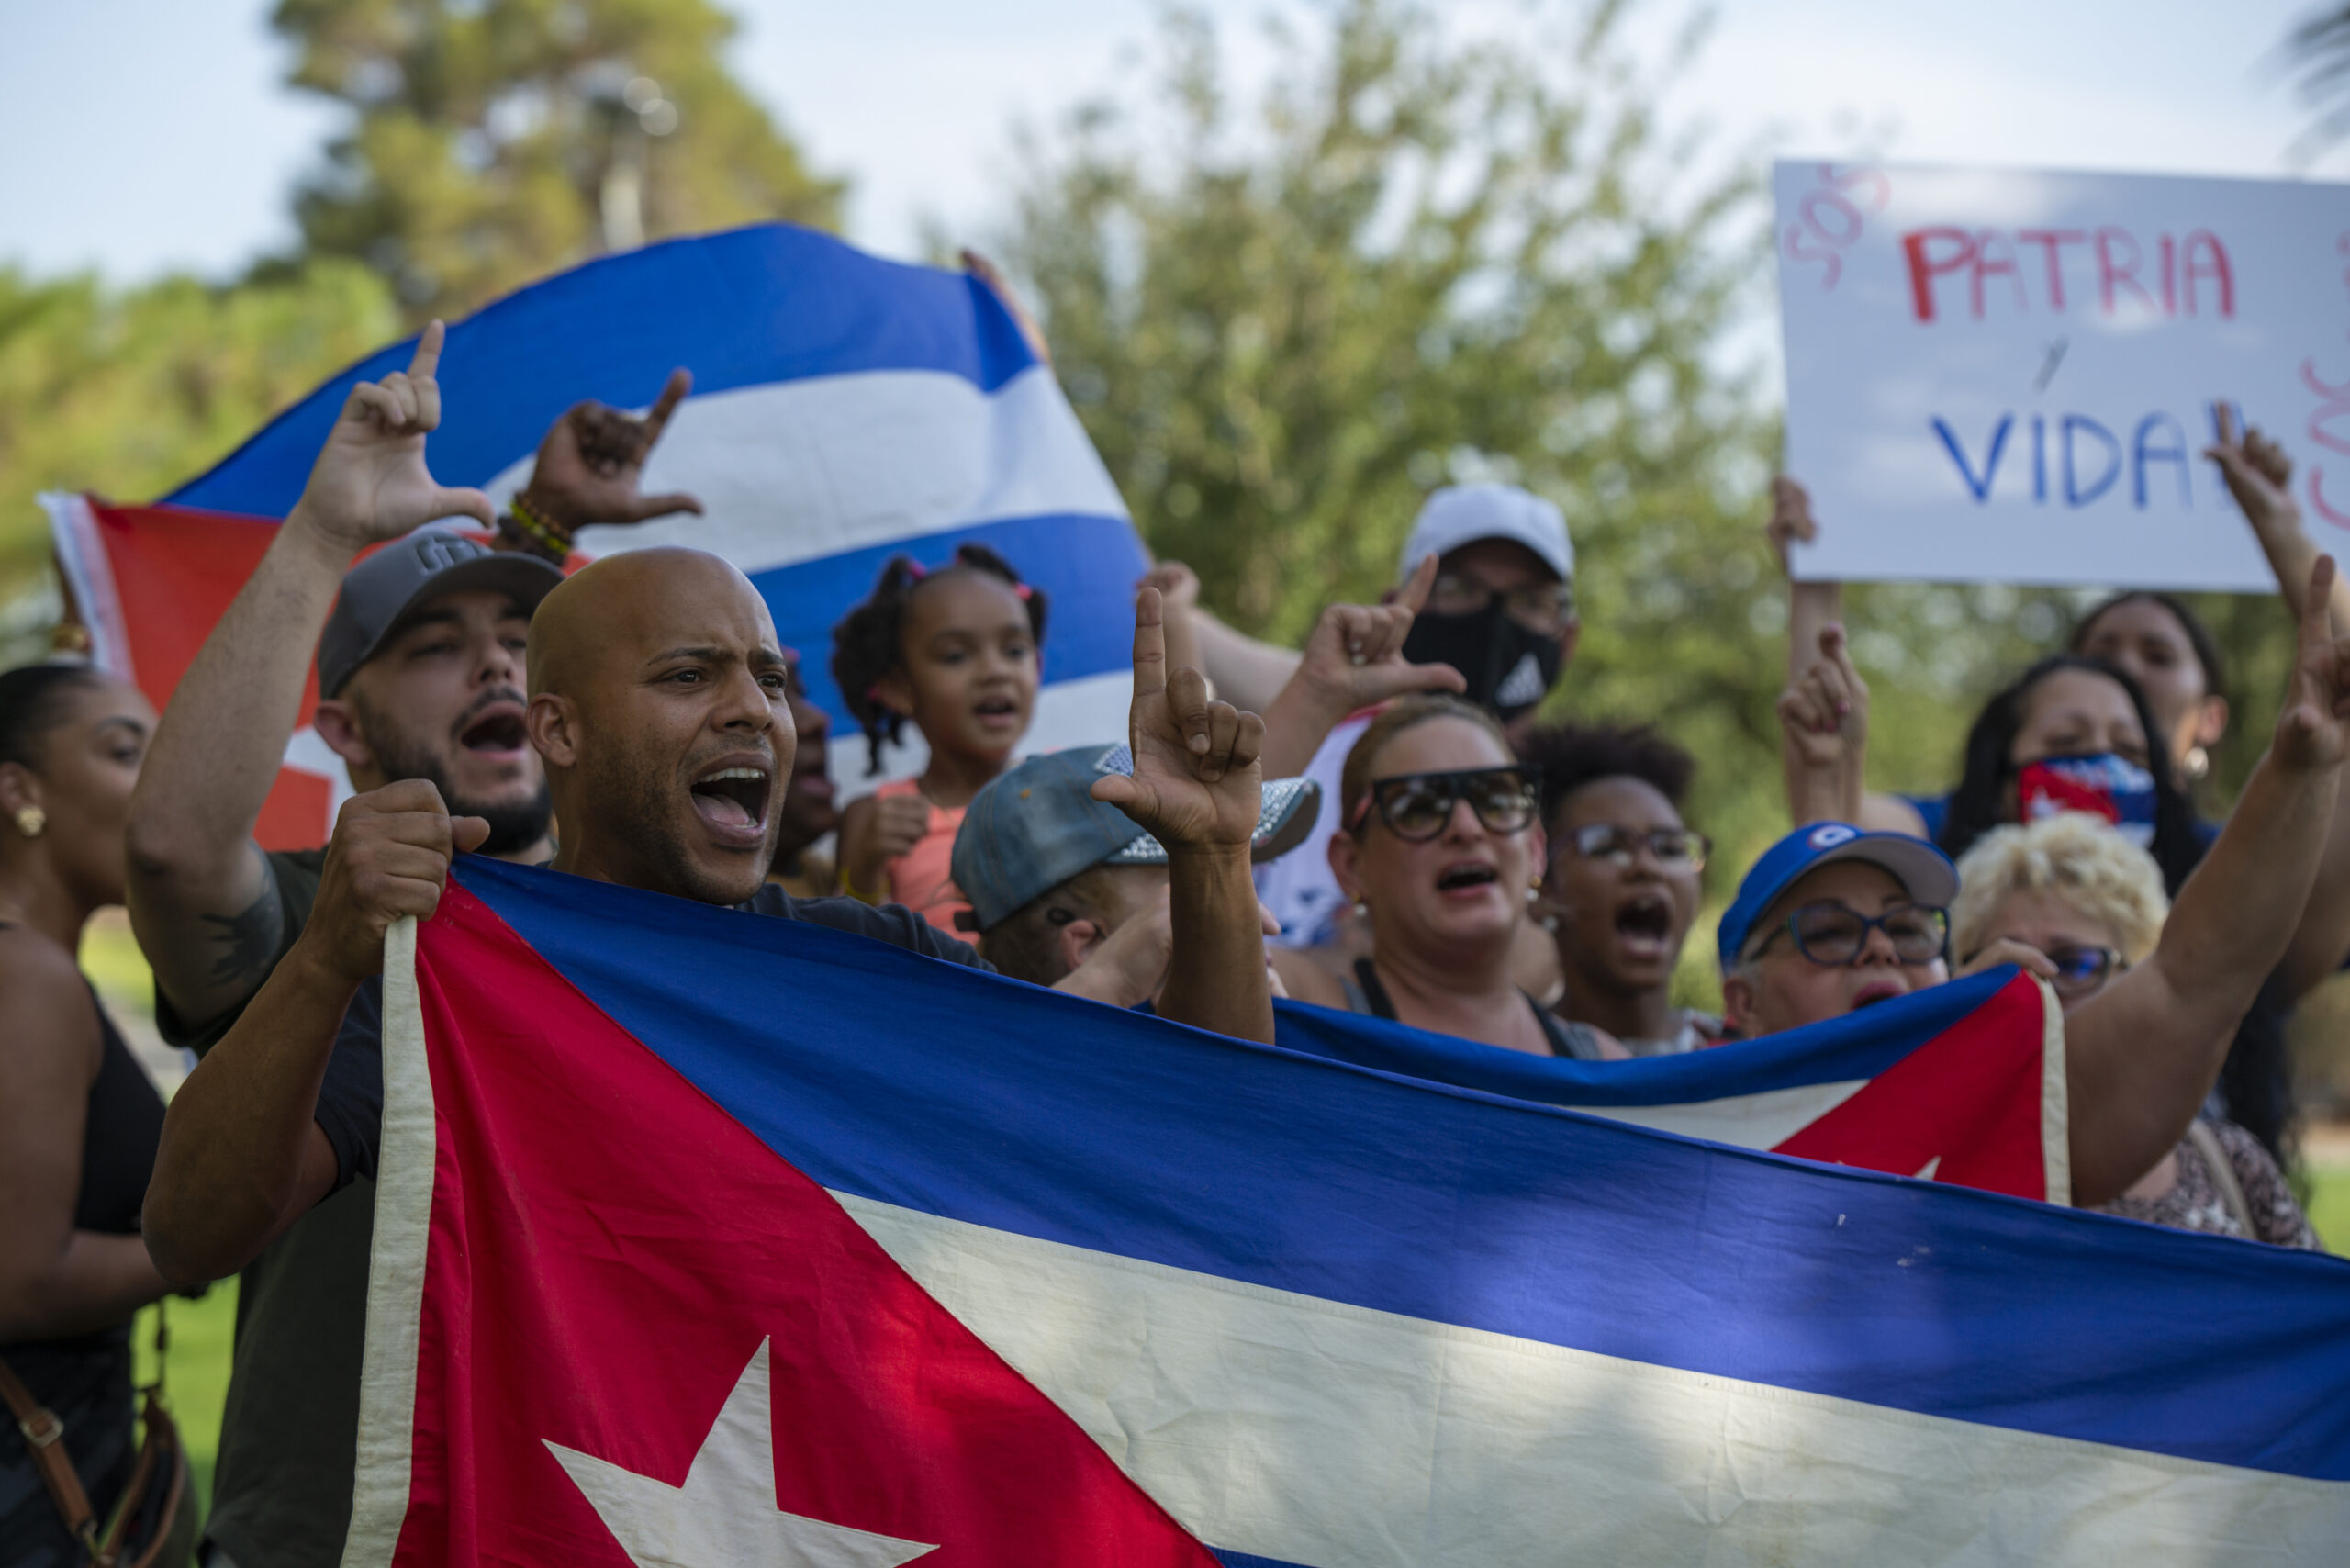 Los gritos de “Libertad” resonaron a 2,000 millas de Cuba en